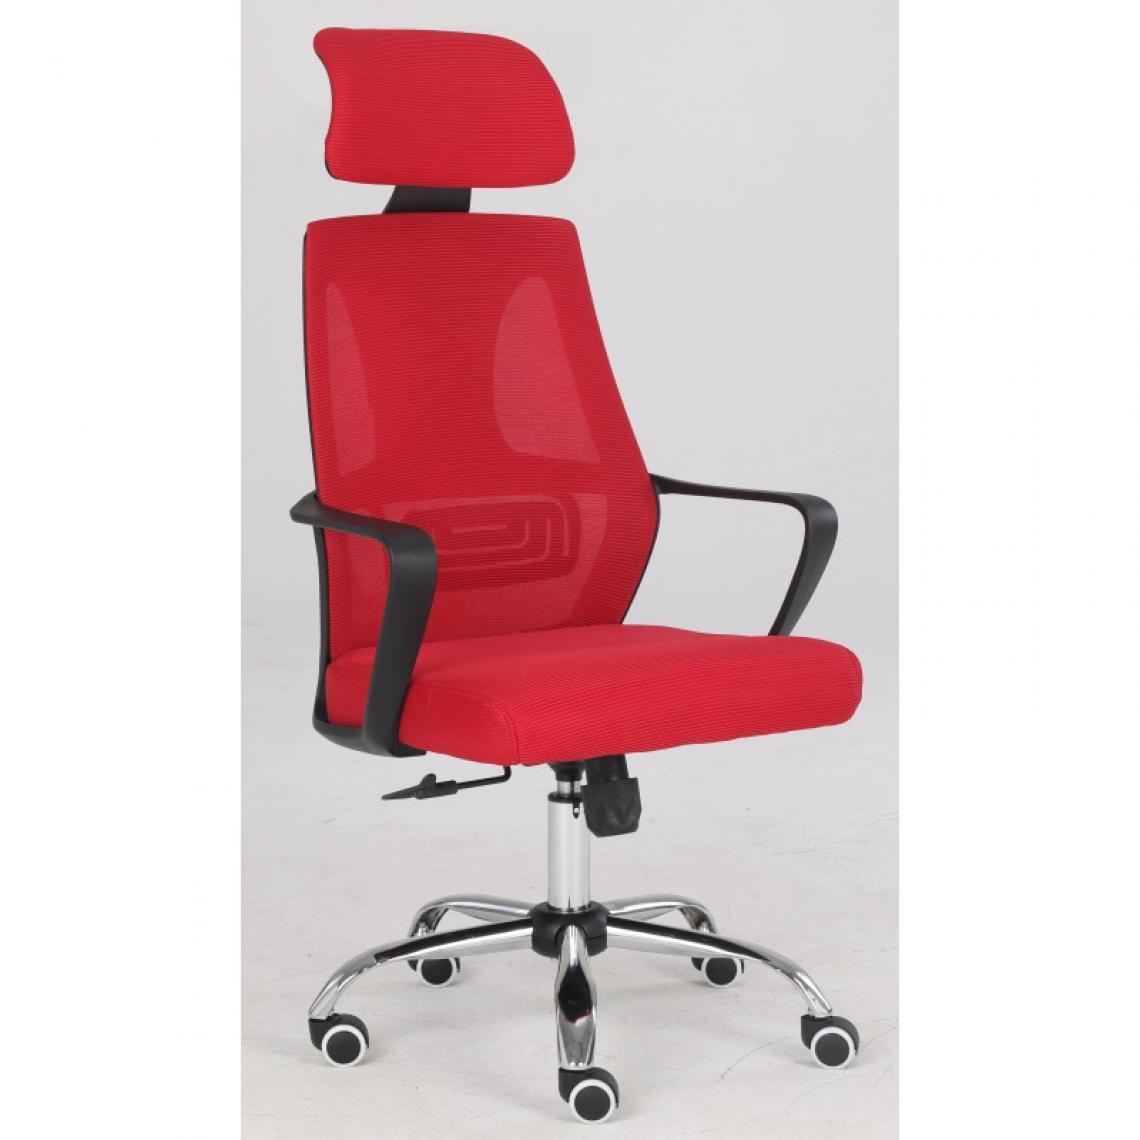 Hucoco - ELIASS - Fauteuil de bureau ergonomique - Hauteur ajustable - Avec accoudoirs - Chaise de bureau télétravail - Rouge - Chaises